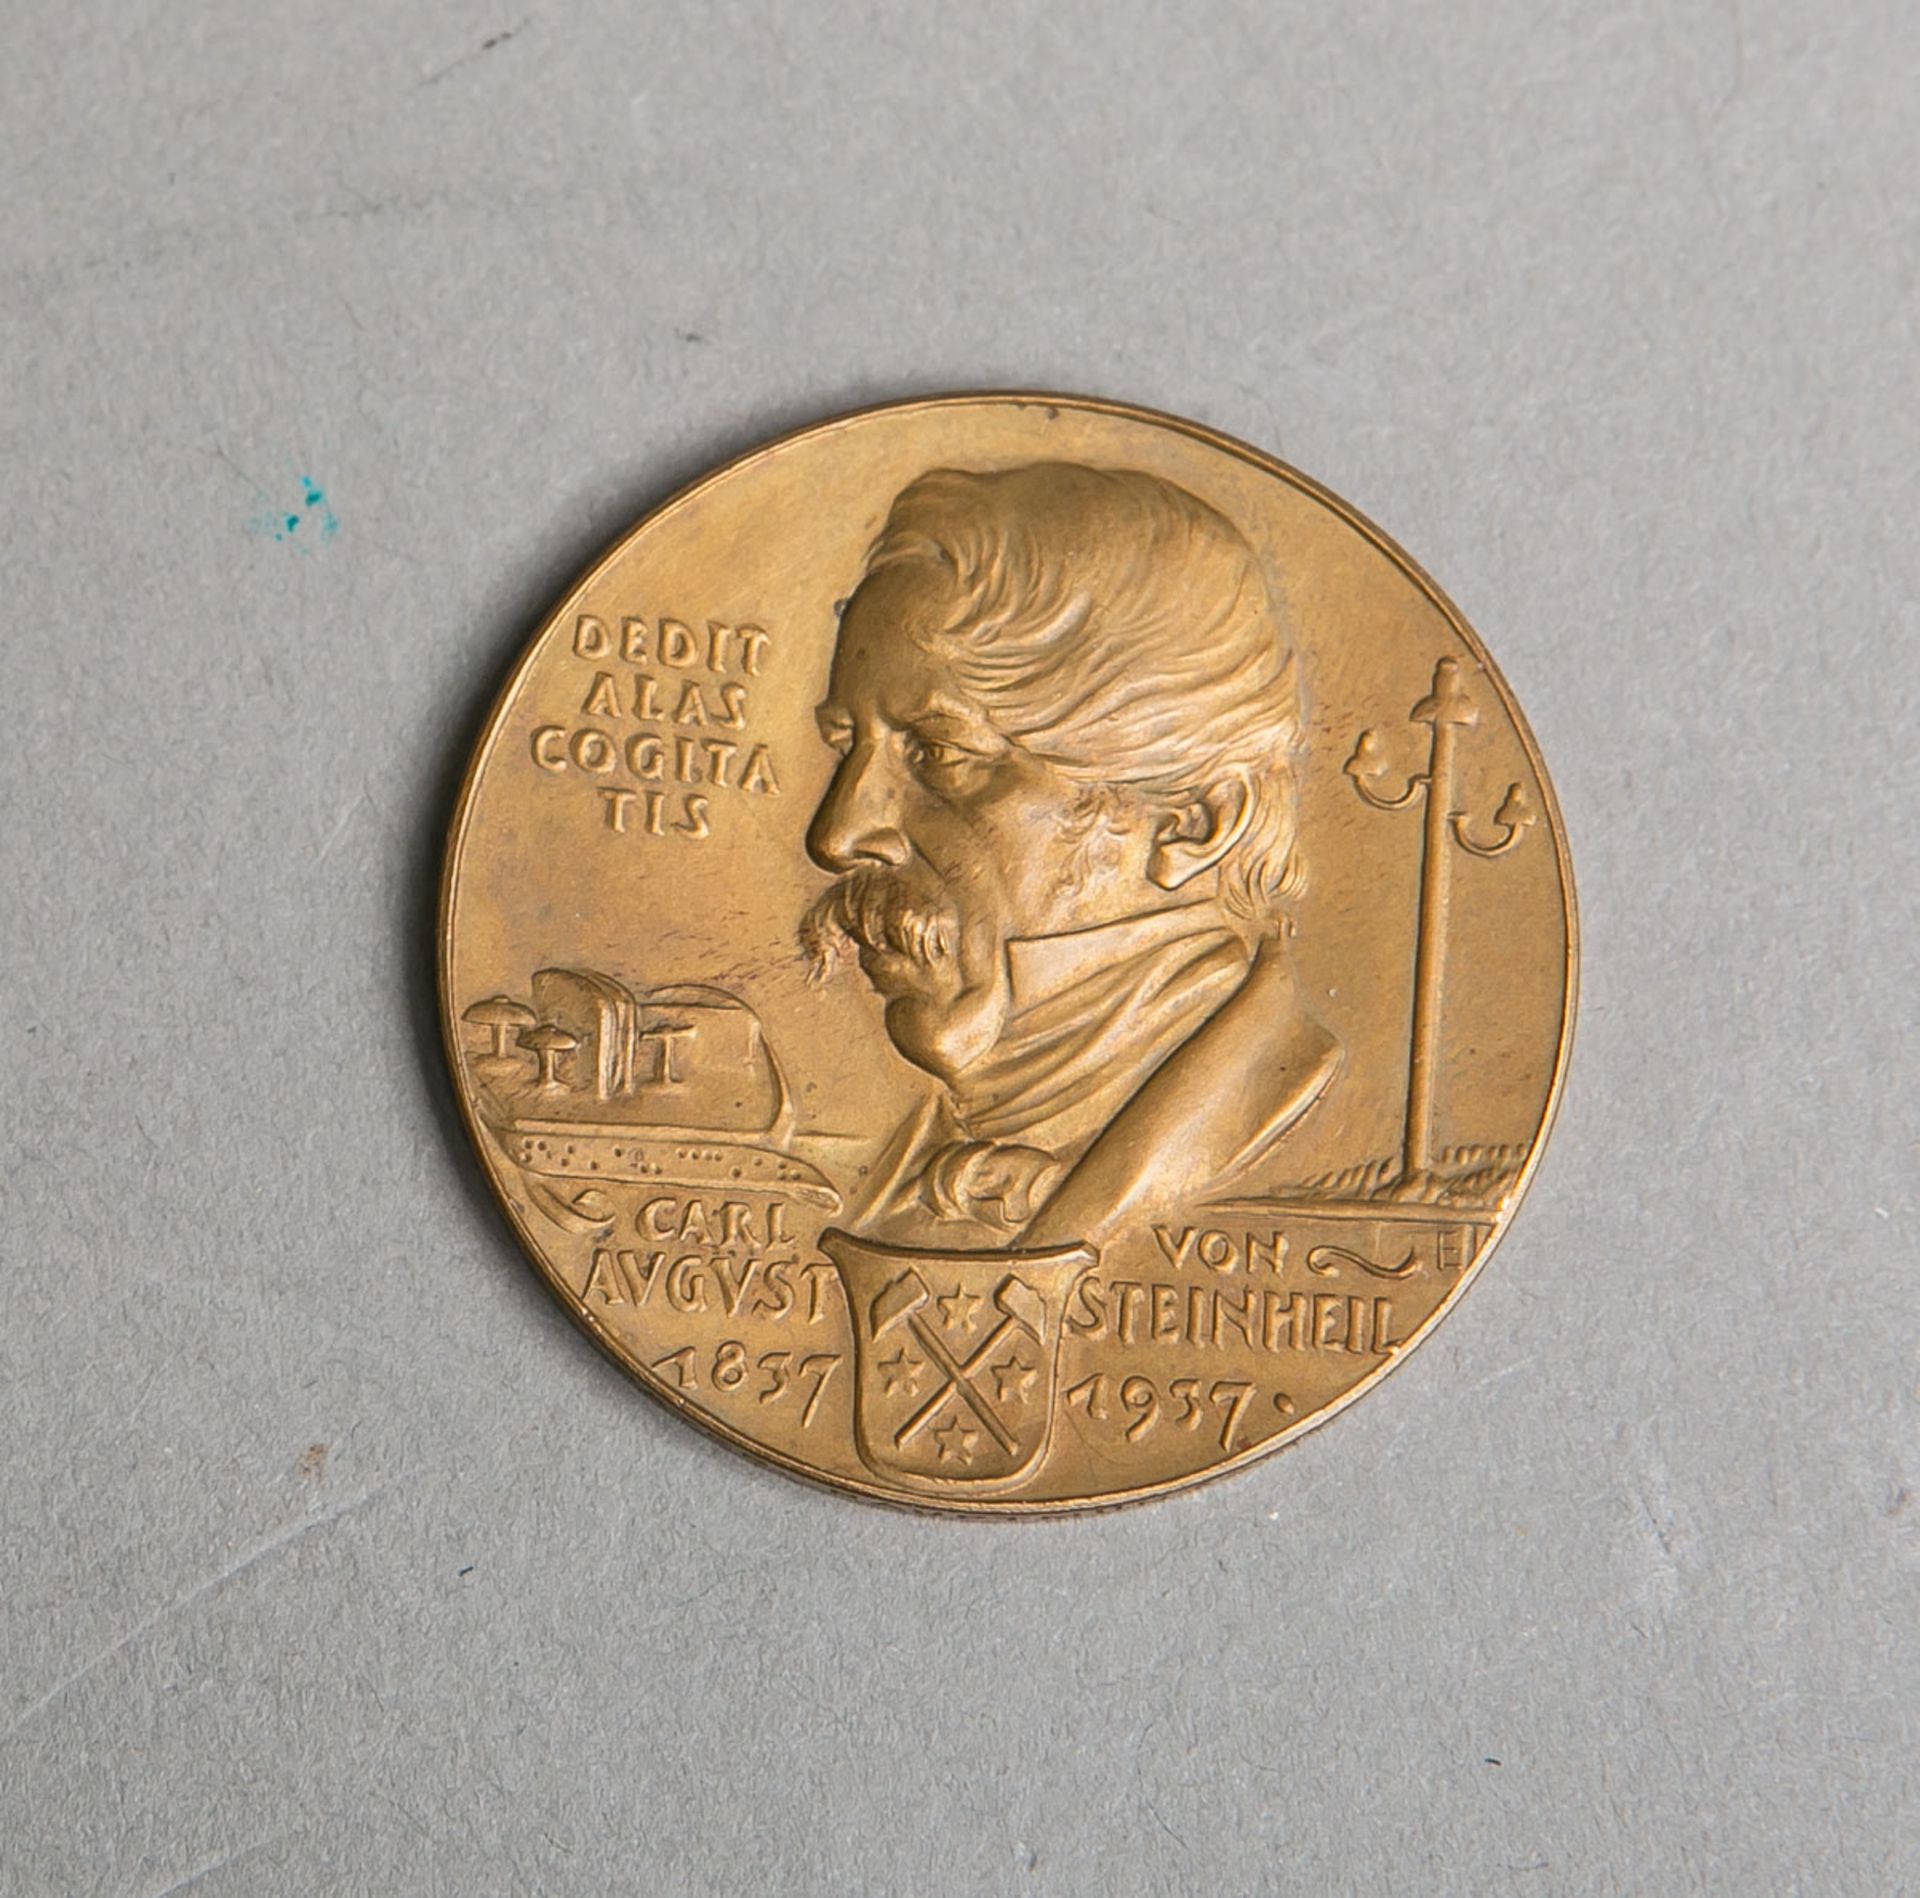 Medaille "Carl August von Steinheil"